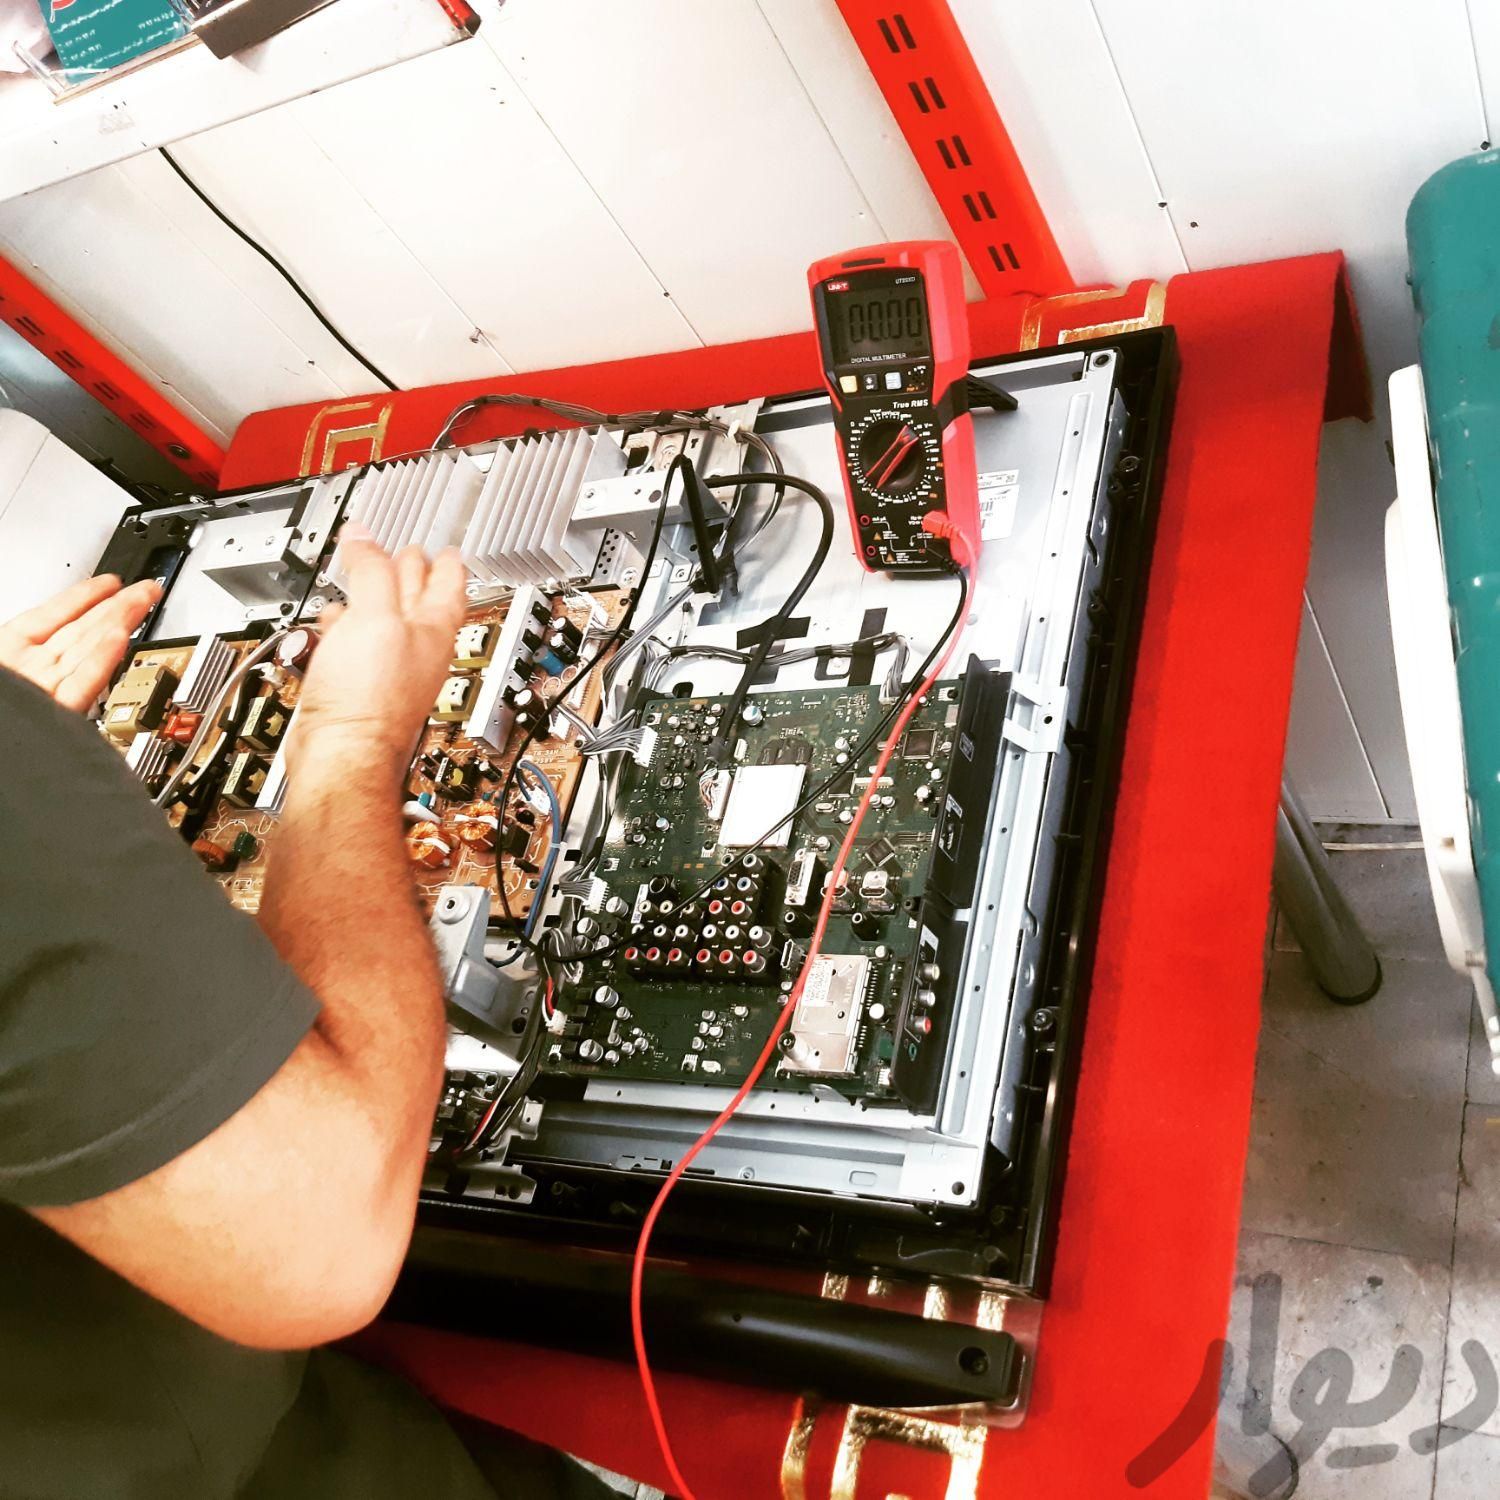 تعمیرات حرفه ایی برد های الکترونیکی گیرنده دیجیتال